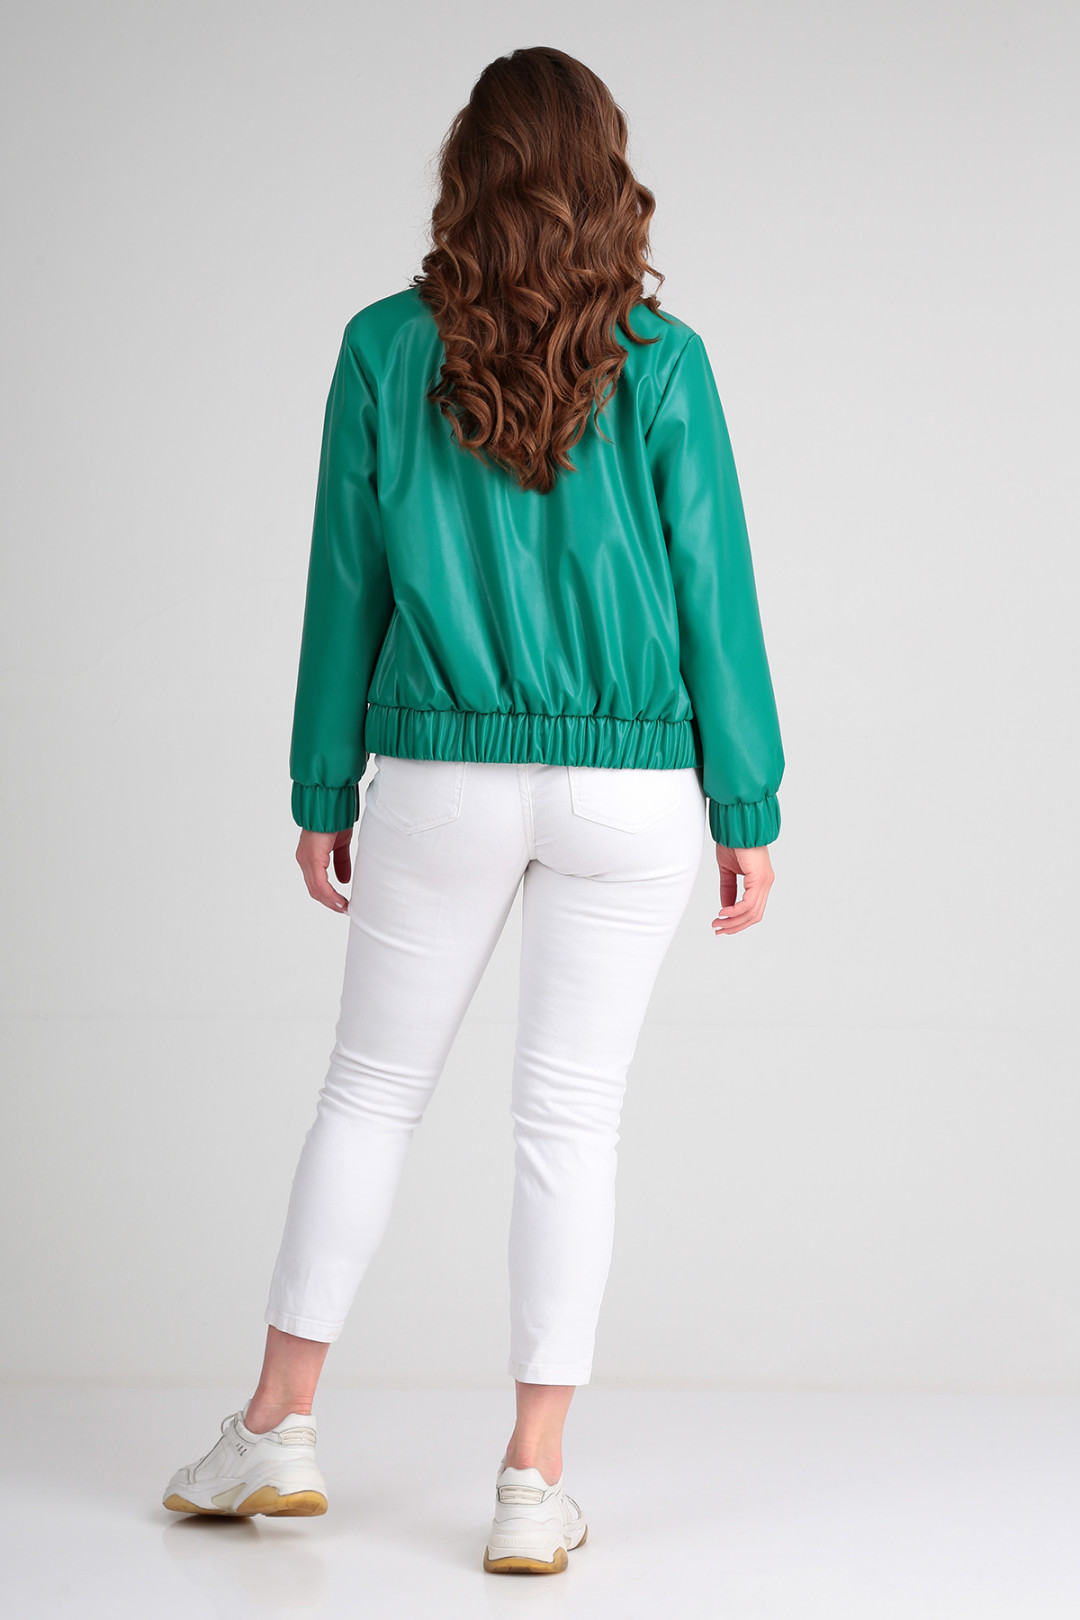 Куртка Лиона-Стиль 844 зеленый